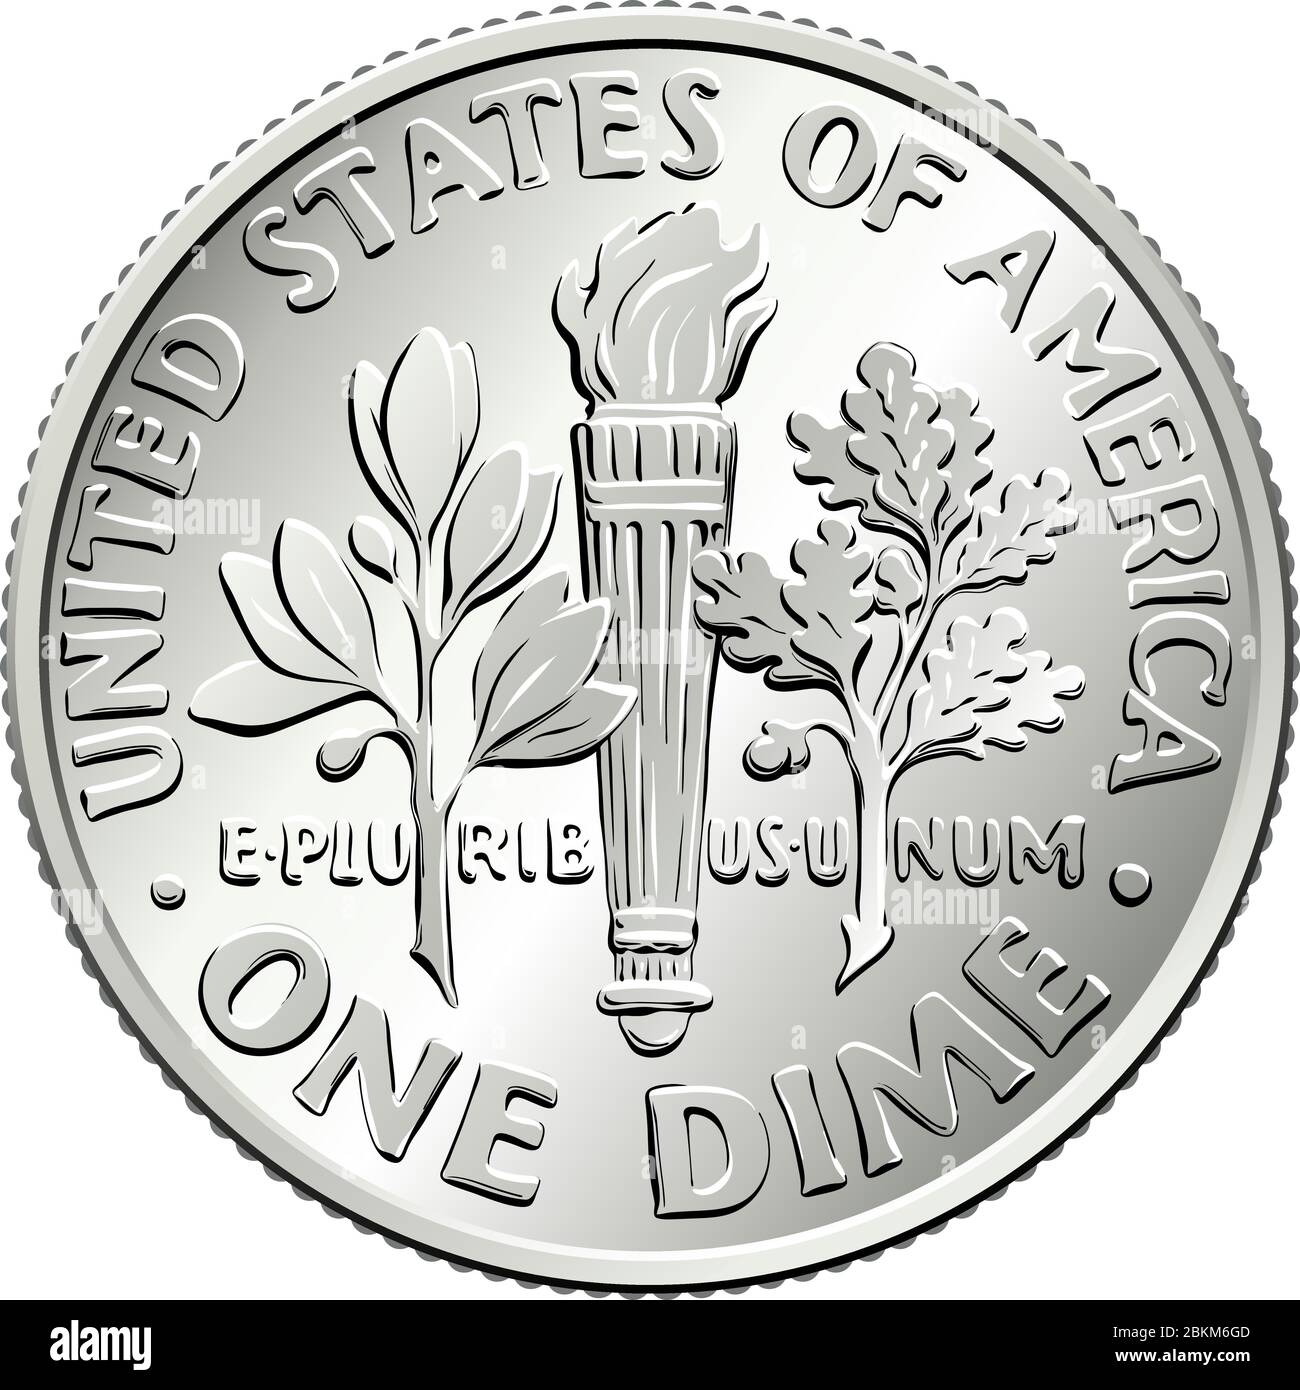 Amerikanisches Geld Roosevelt Dime, Vereinigte Staaten eine Cent- oder 10-Cent-Silbermünze, Olivenzweig, Fackel, Eichenzweig auf der Rückseite Stock Vektor